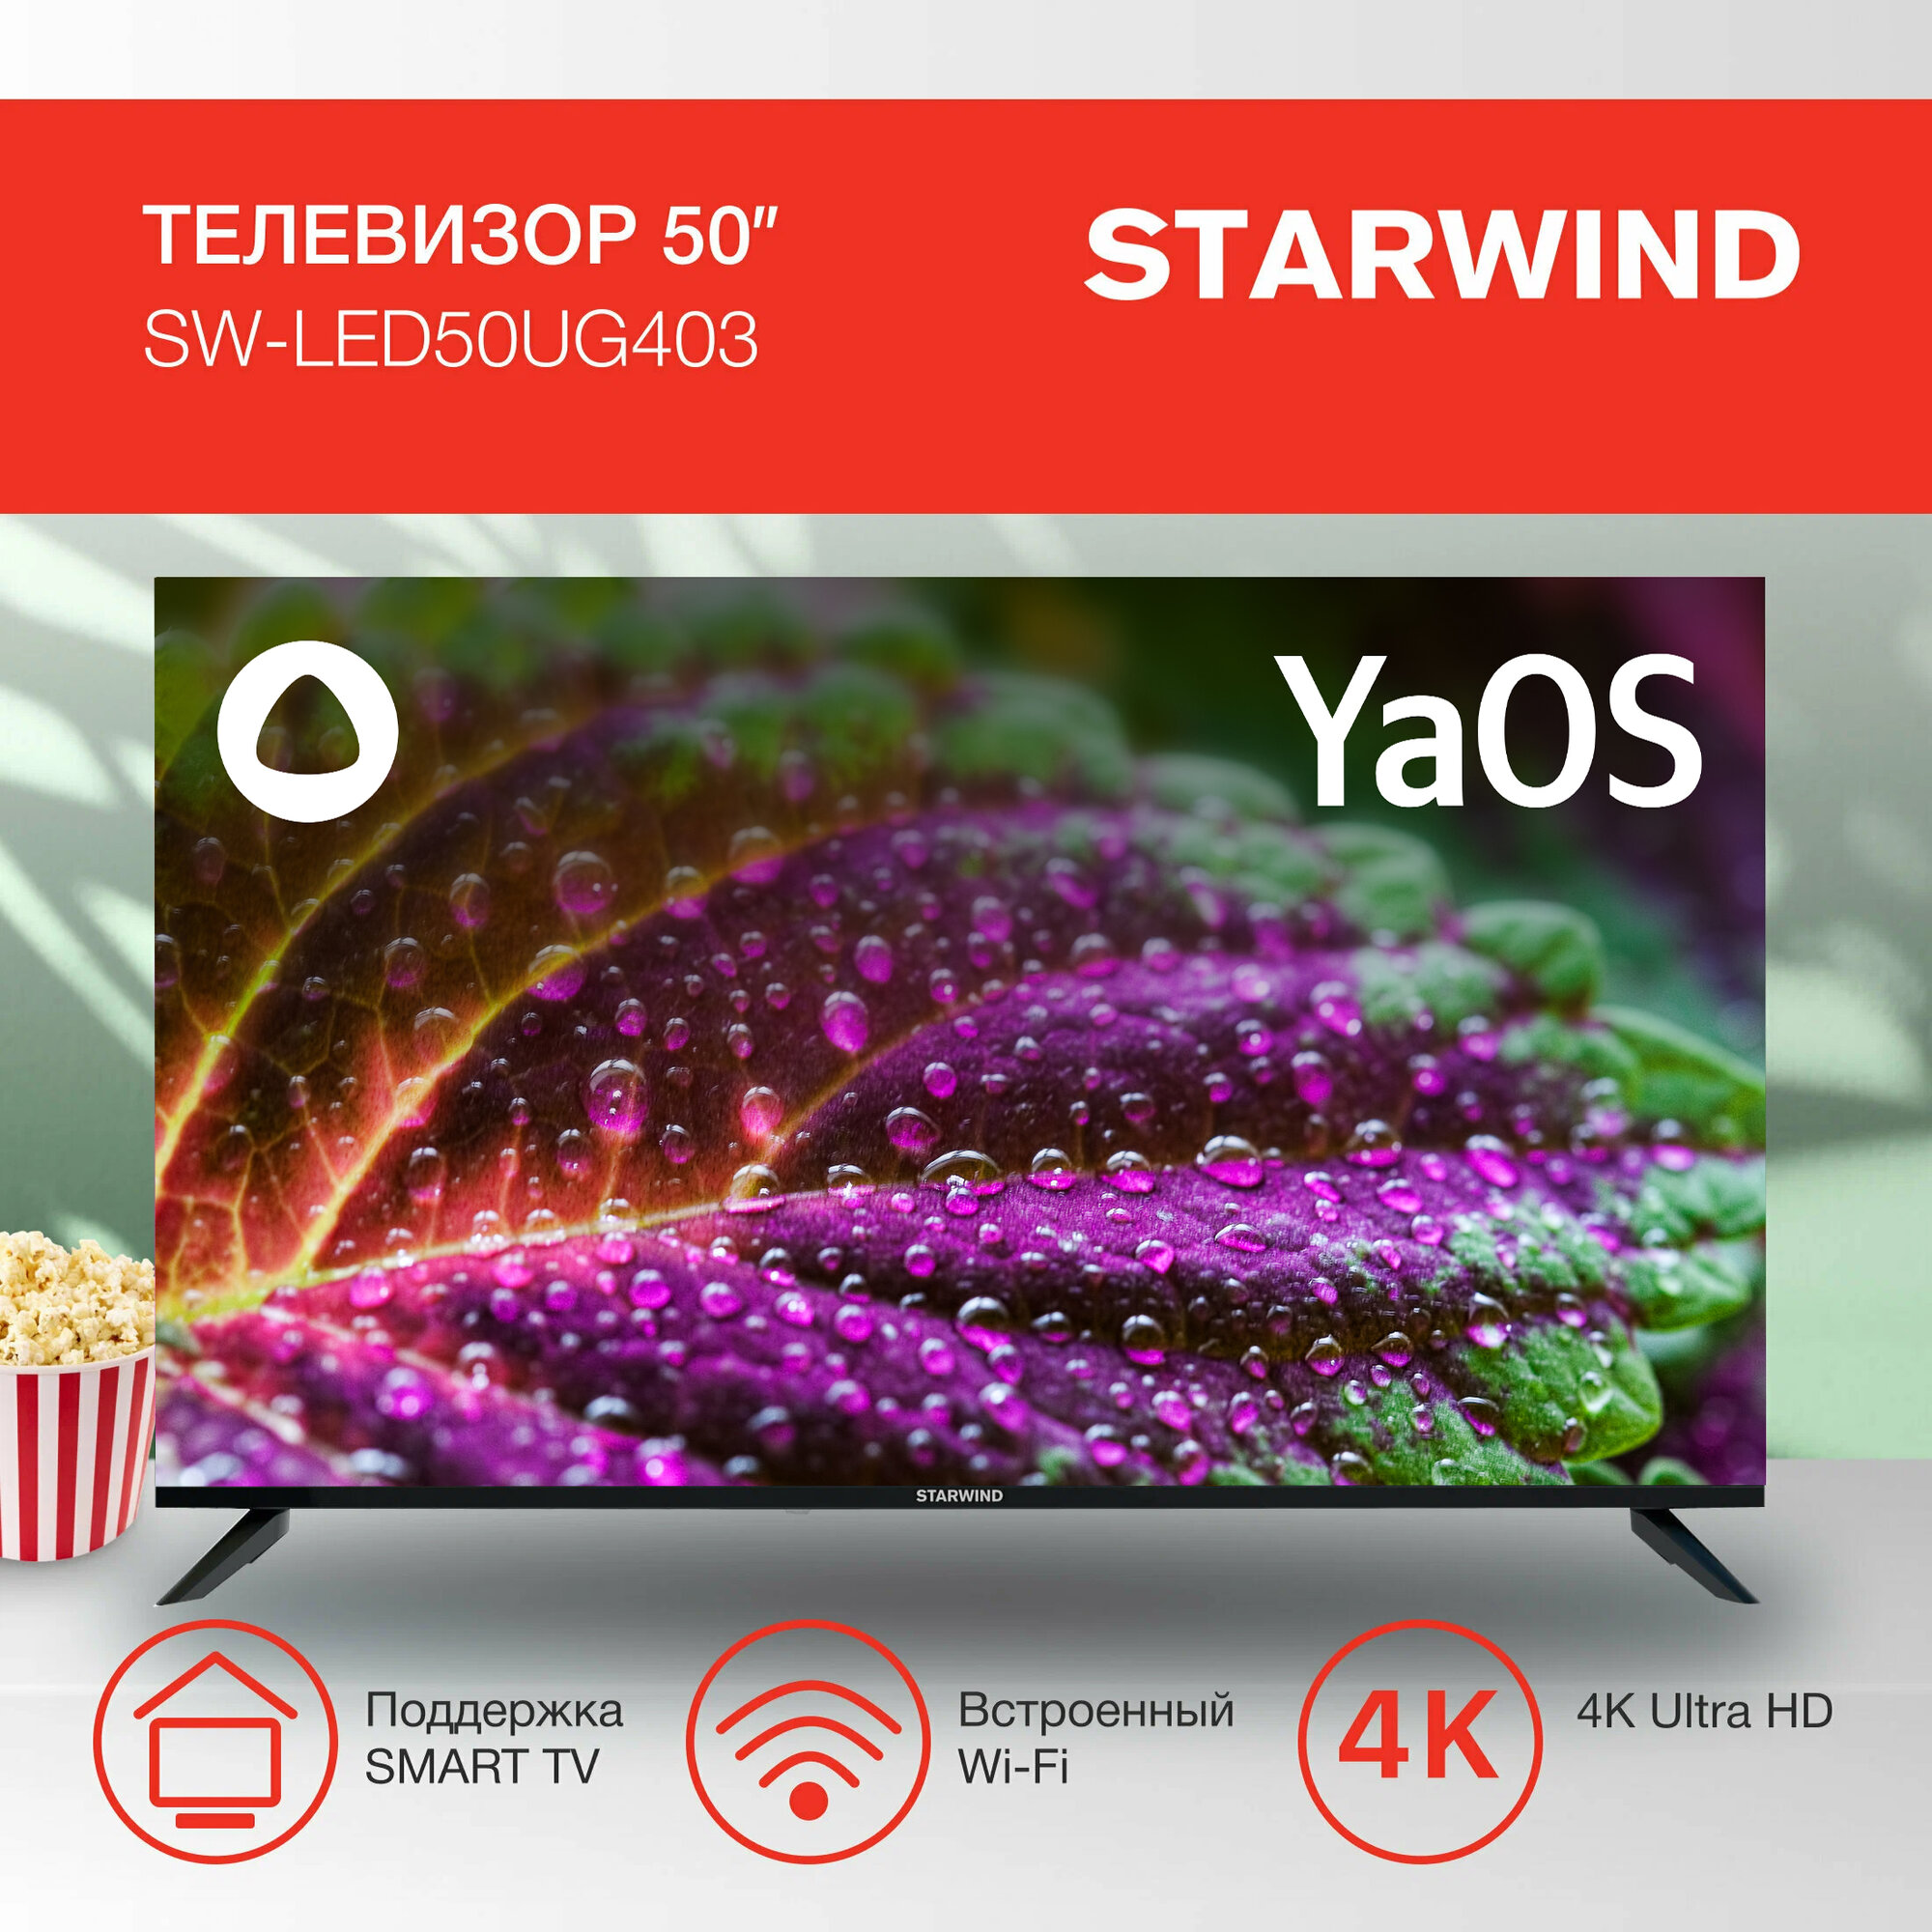 Телевизор Starwind Яндекс.ТВ SW-LED50UG403, 50", LED, 4K Ultra HD, Яндекс.ТВ, черный - фото №2